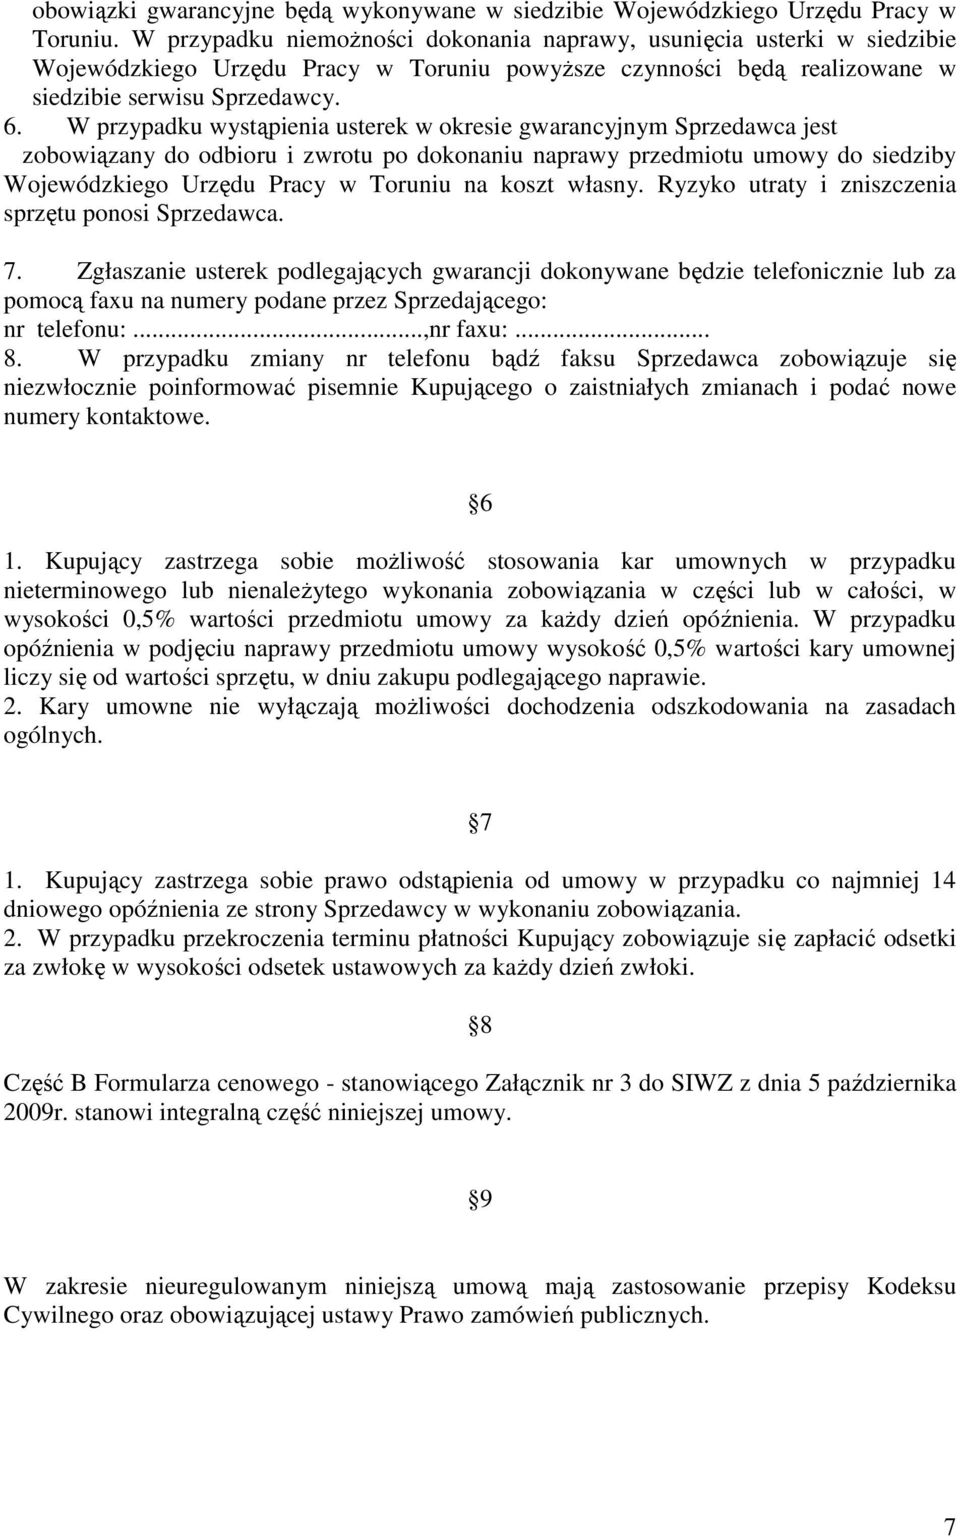 W przypadku wystąpienia usterek w okresie gwarancyjnym Sprzedawca jest zobowiązany do odbioru i zwrotu po dokonaniu naprawy przedmiotu umowy do siedziby Wojewódzkiego Urzędu Pracy w Toruniu na koszt